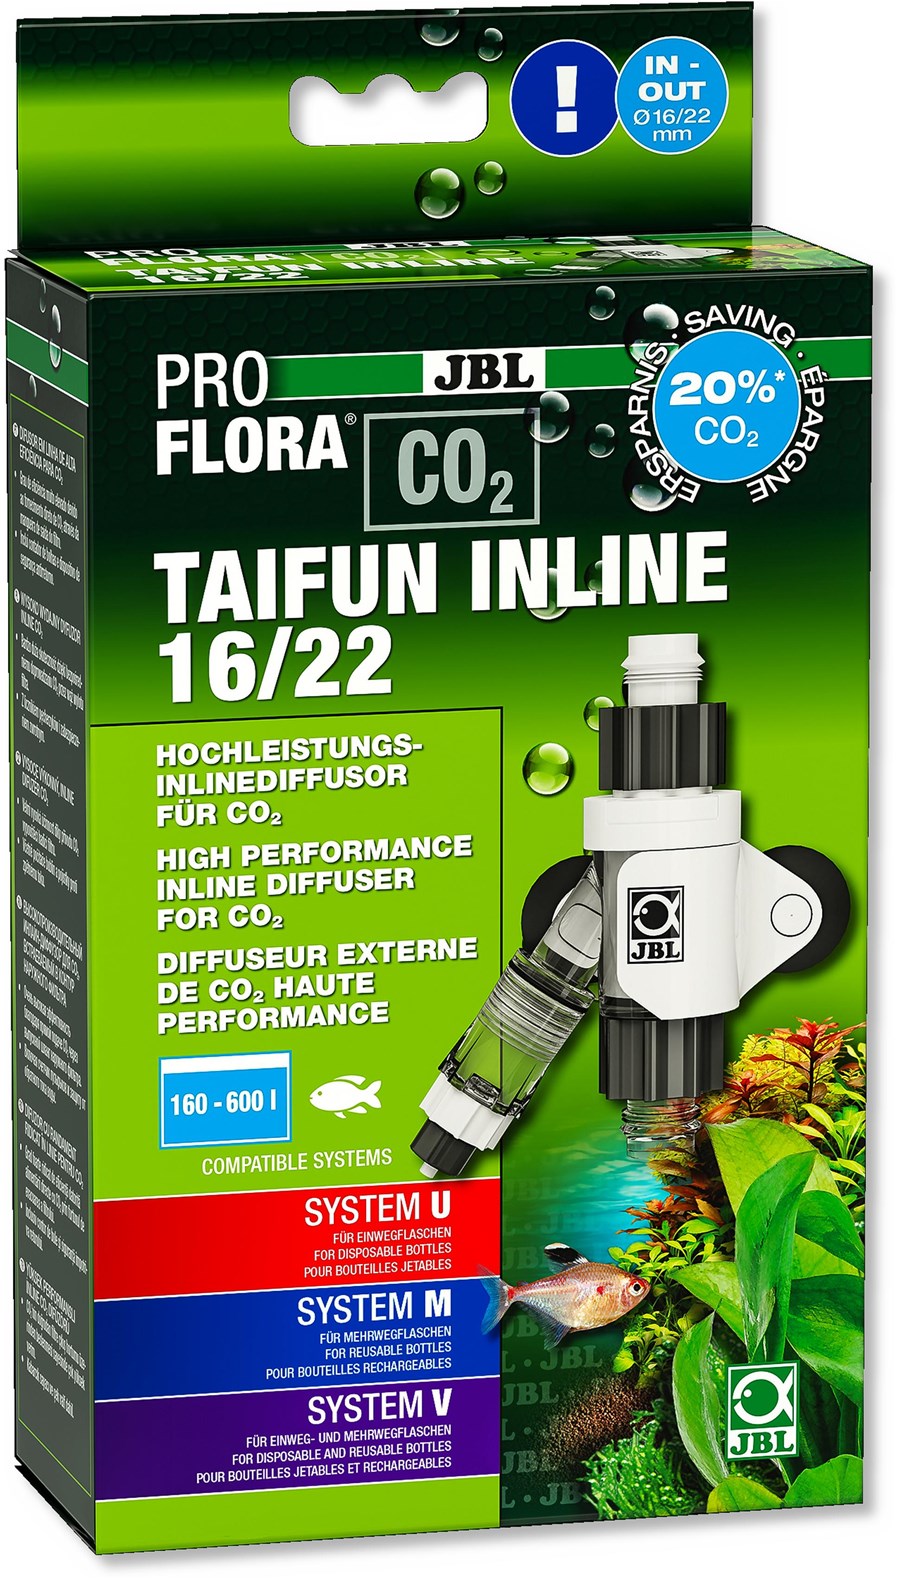 JBL PROFLORA CO2 TAIFUN INLINE 16/22